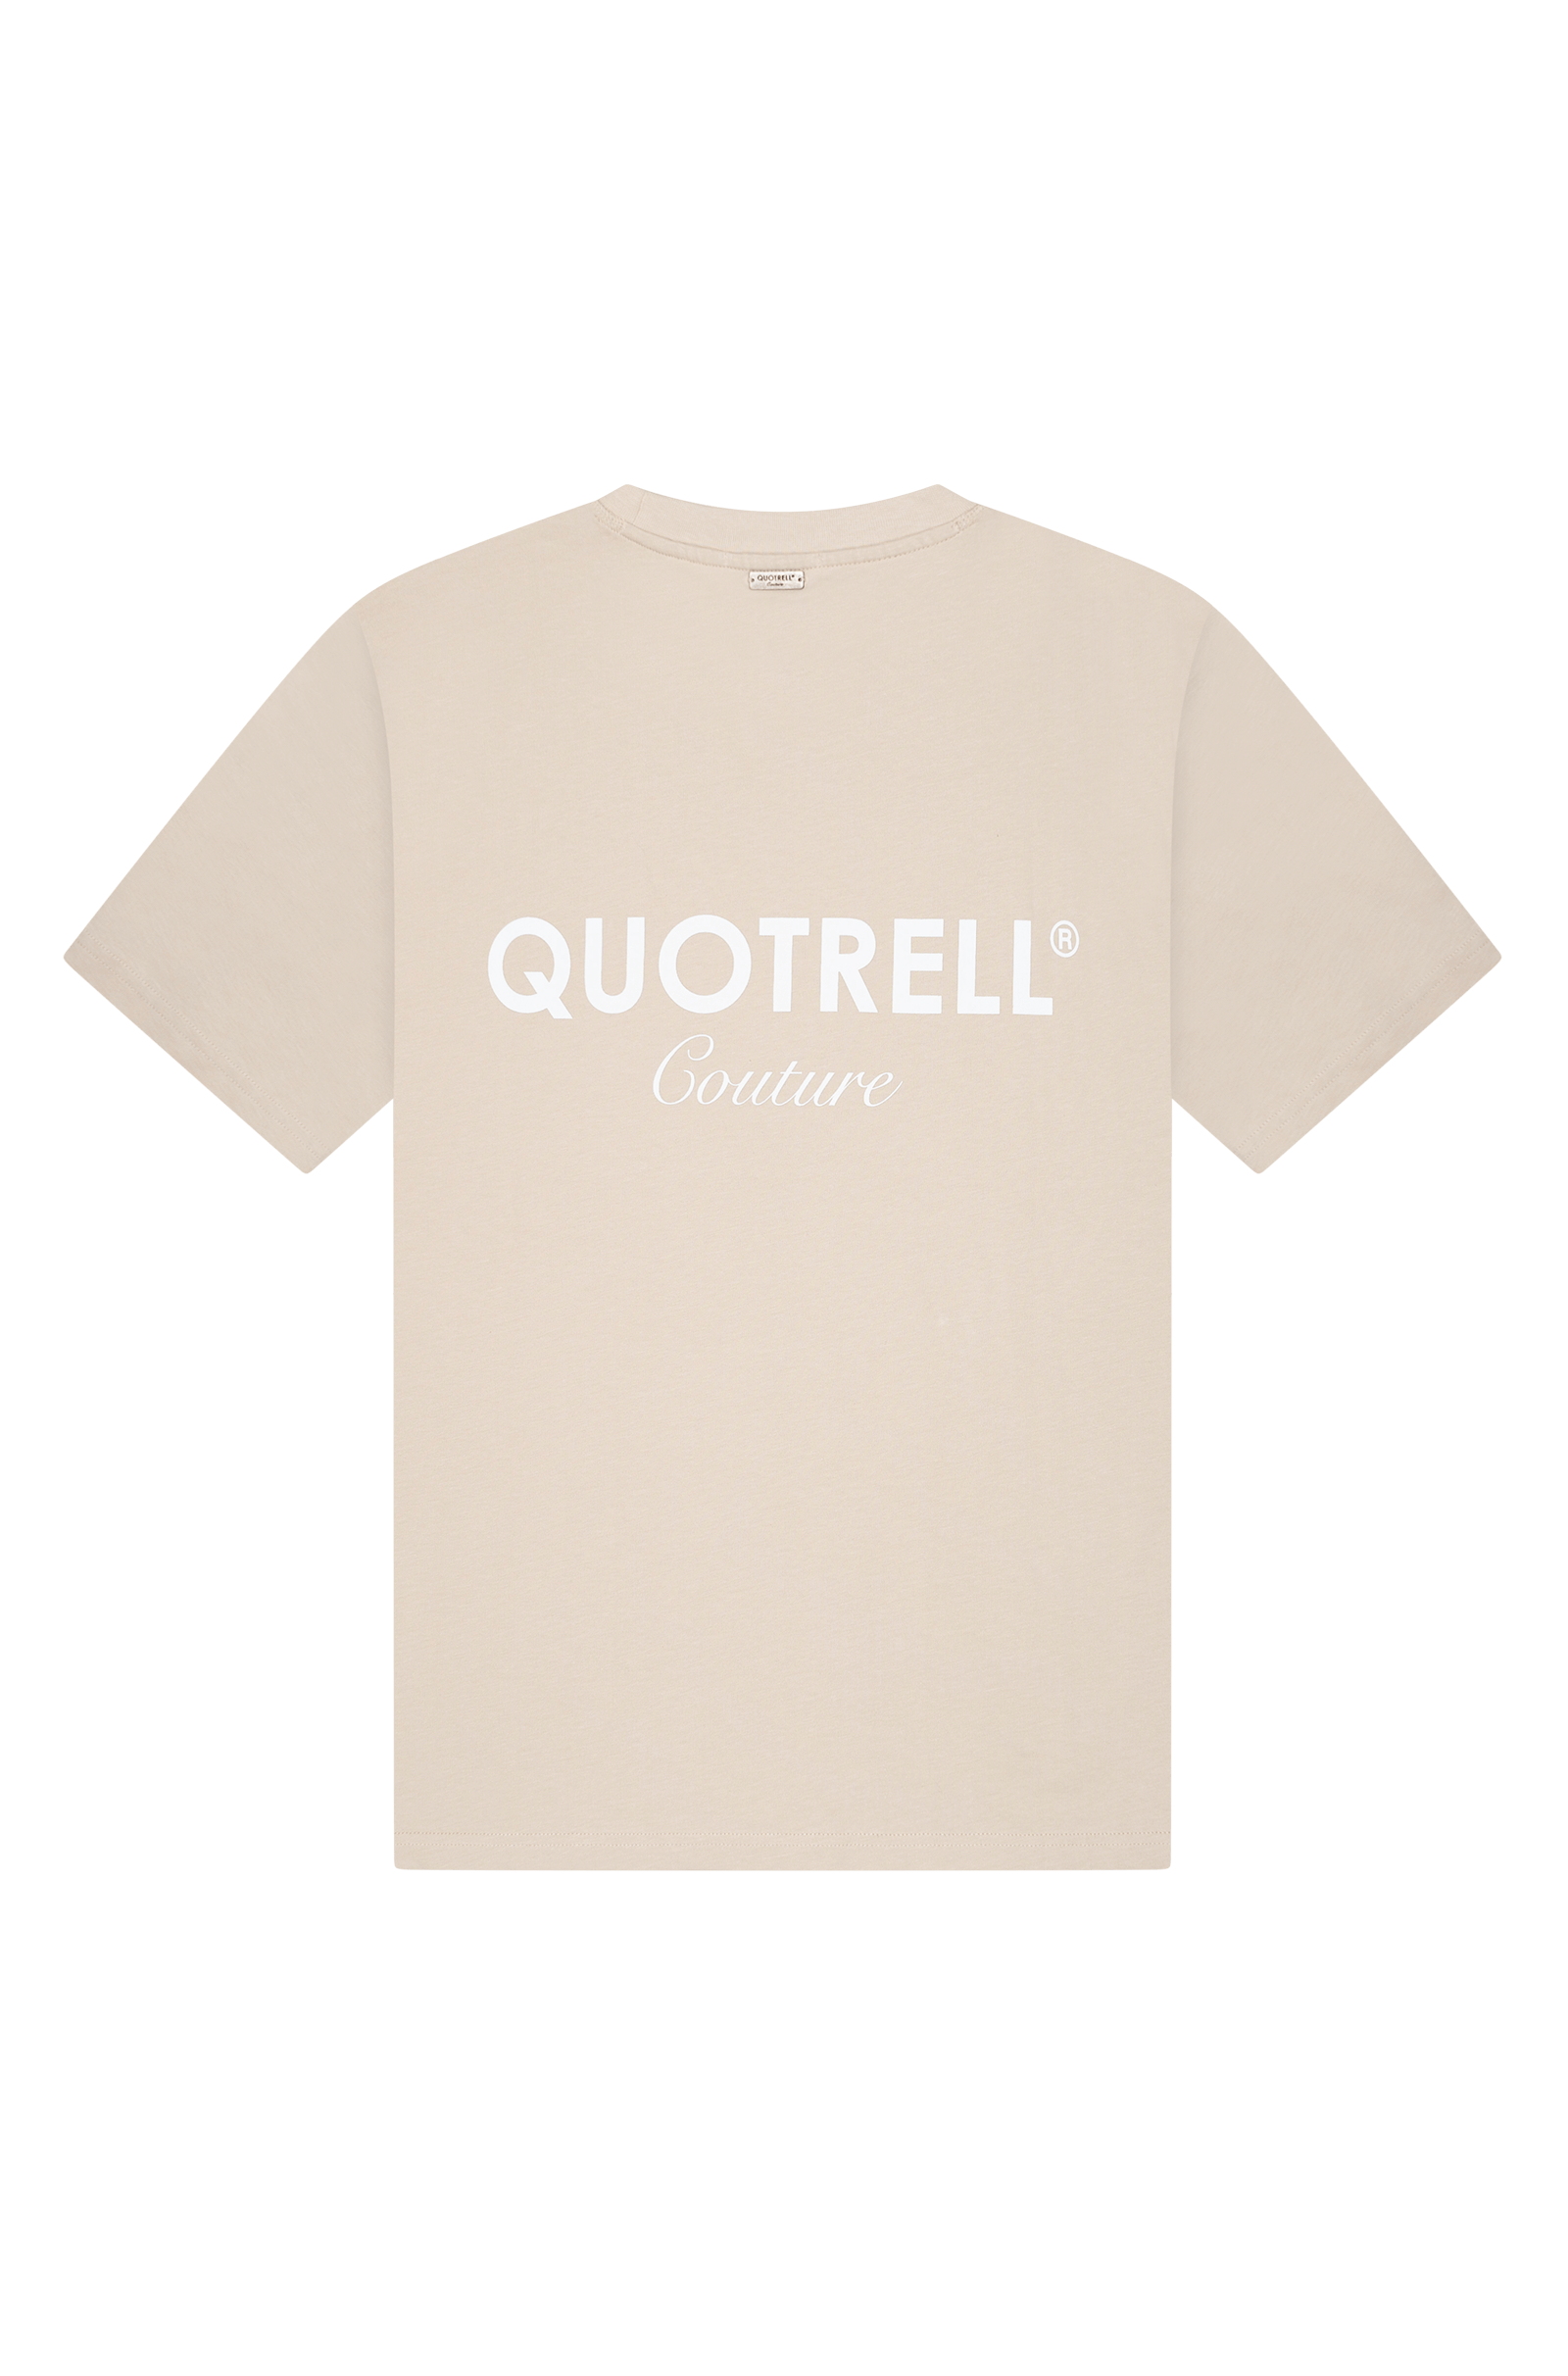 Quotrell Sarasota T-shirt